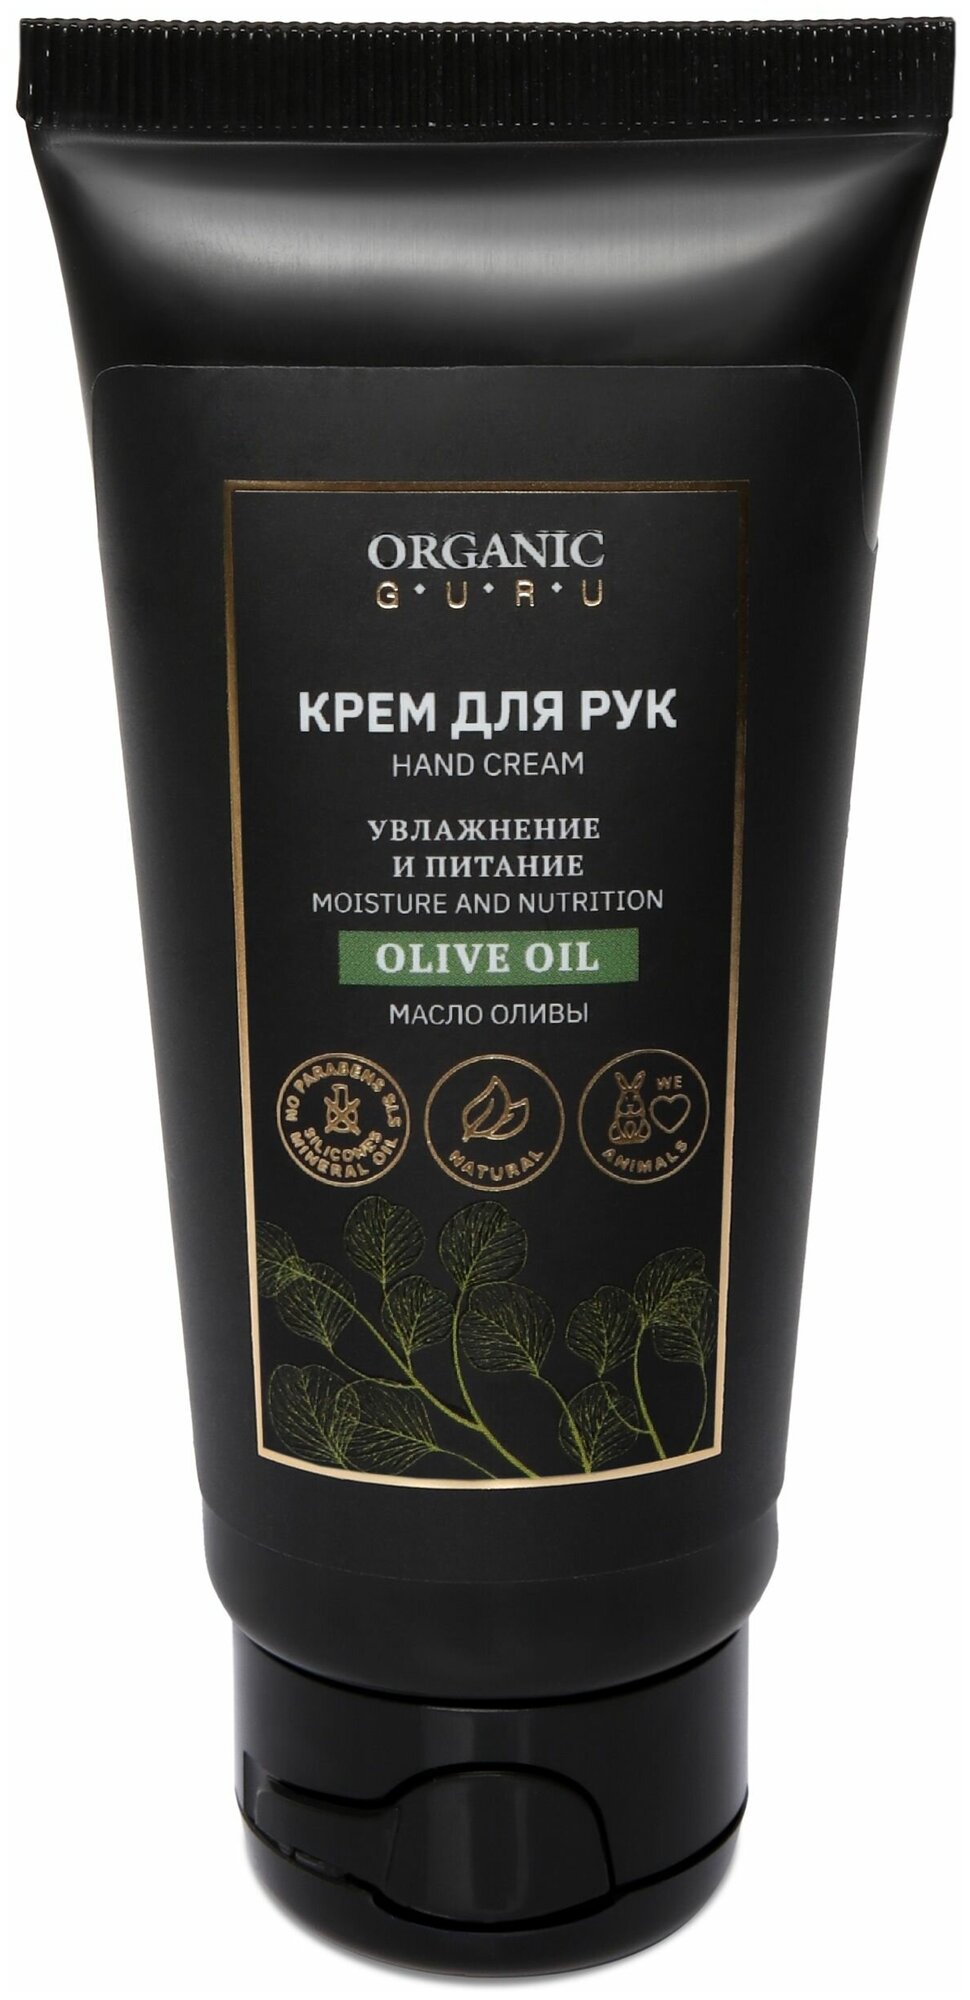 Organic Guru Крем для рук "Масло Оливы" Увлажнение и питание, 60 мл. Уходовый крем "Olive OIL" Органик Гуру